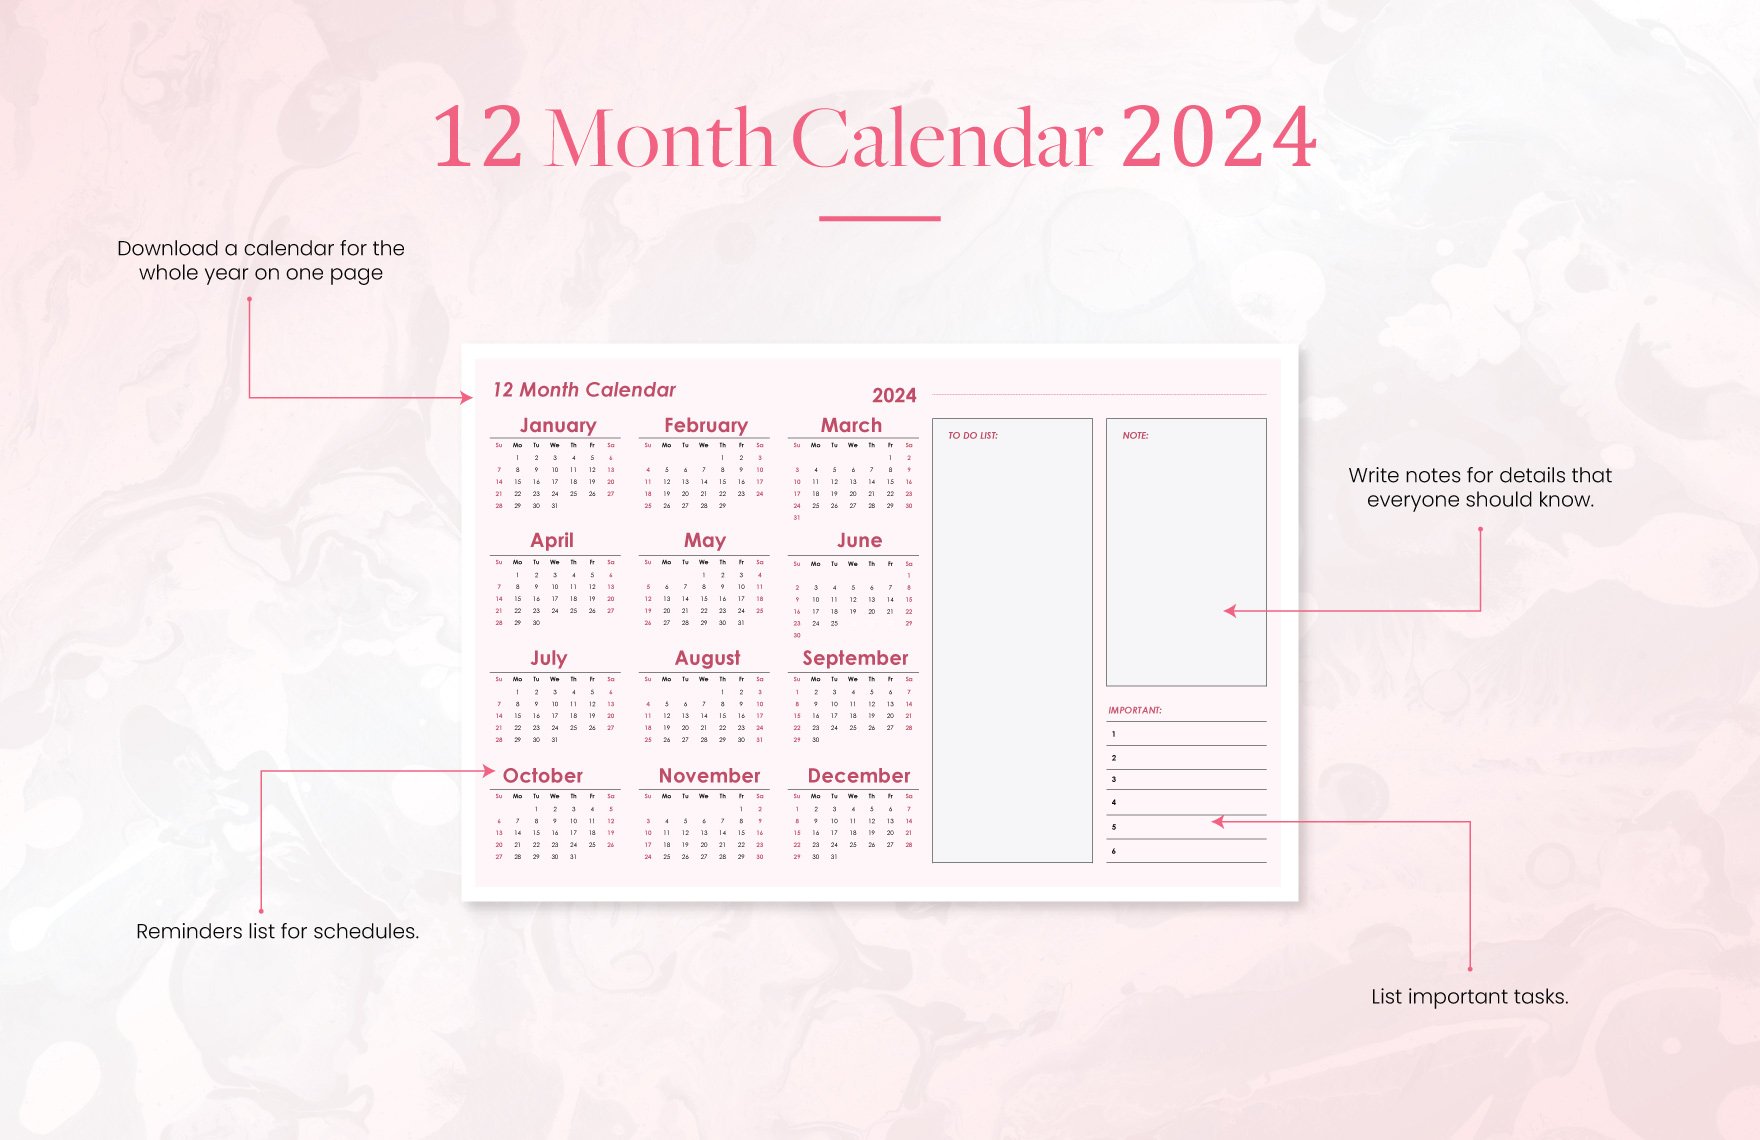 12 month Calendar 2024 Template